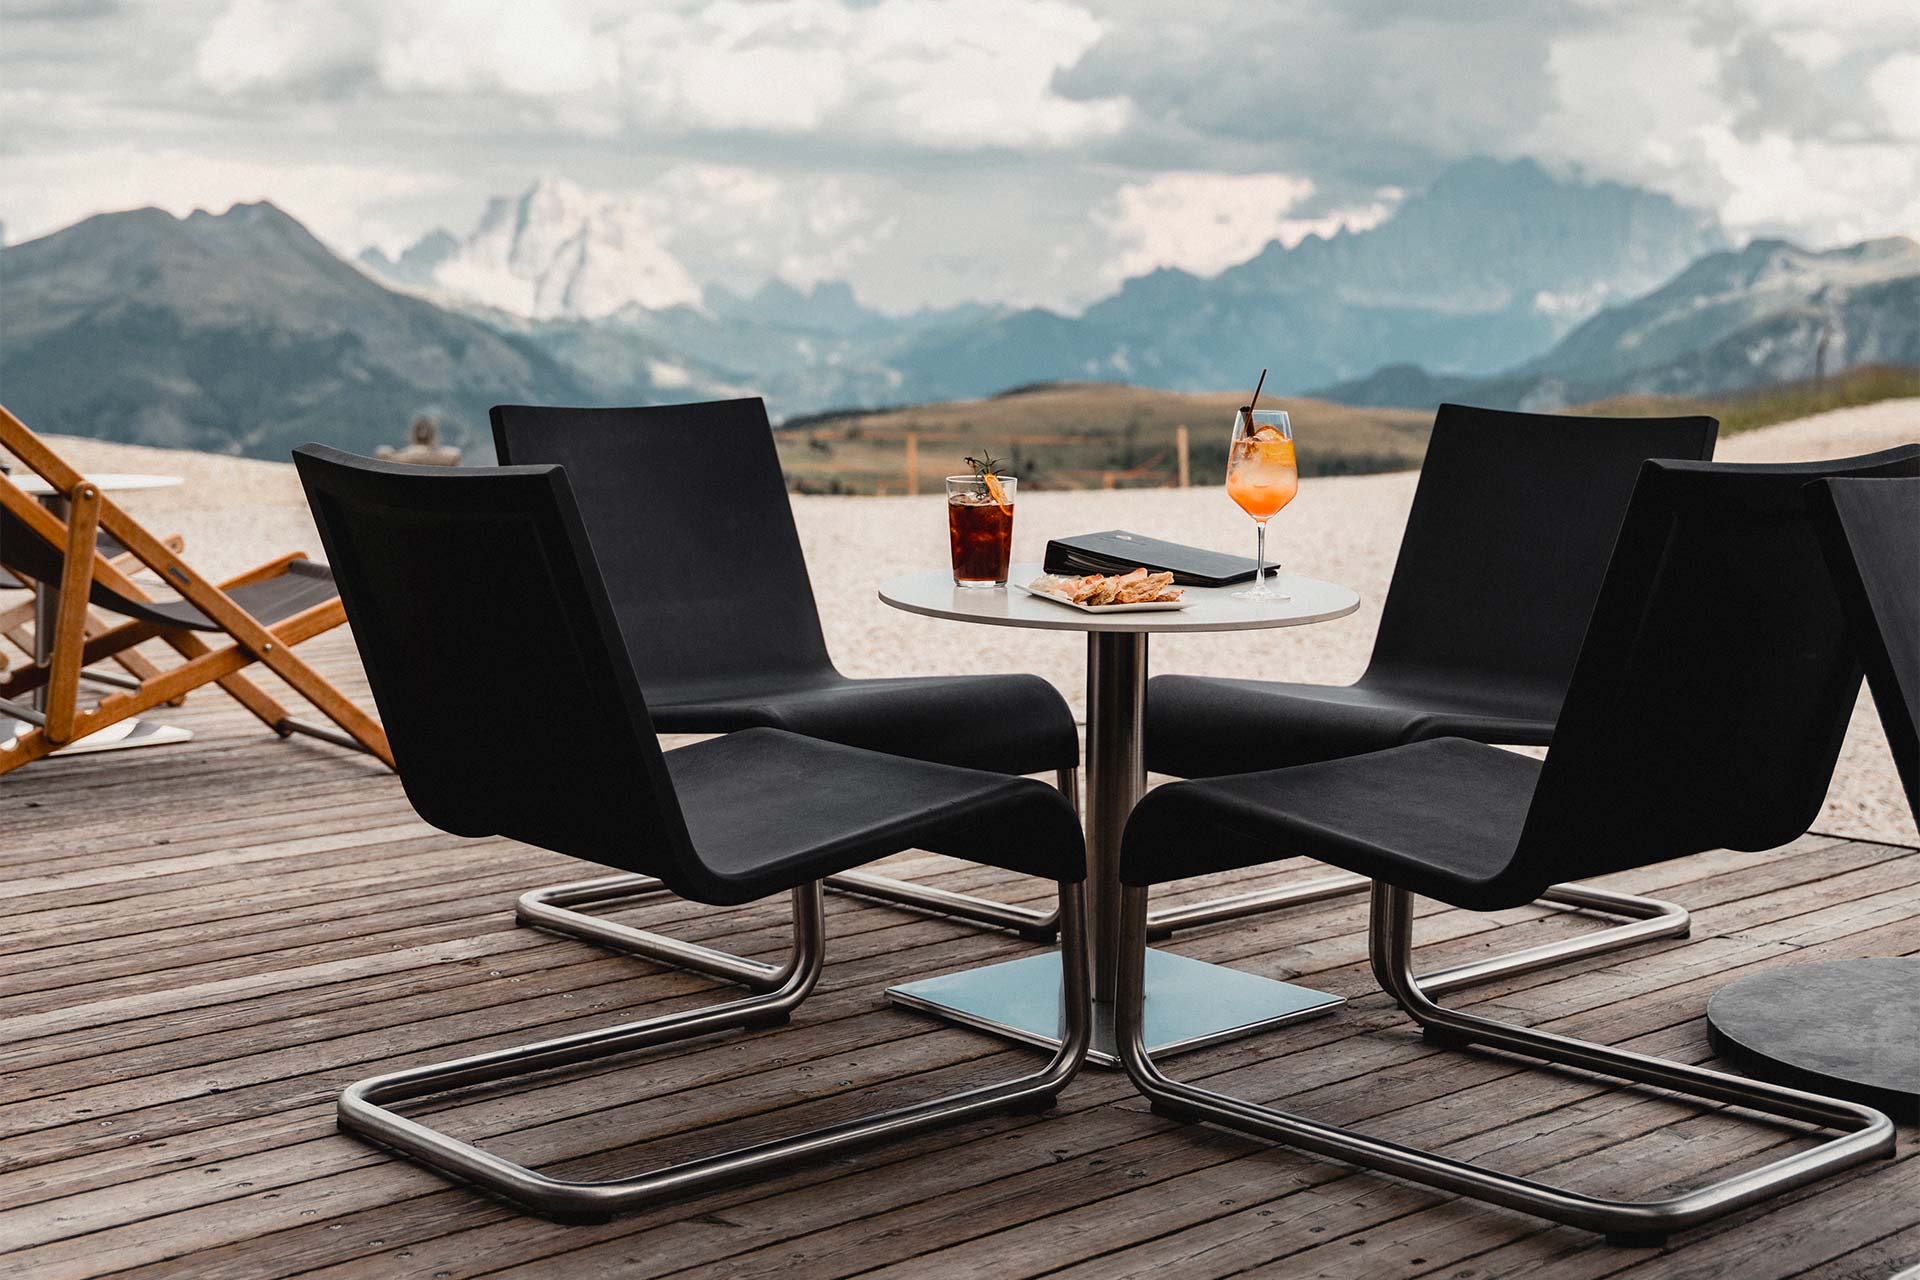 L'Alpine Lounge arredato con delle sedie, tavolini e divanetti, dal quali gli ospiti possono godere di una vista panoramica su Corvare. In mezzo una stufa per riscaldare l'ambiente.